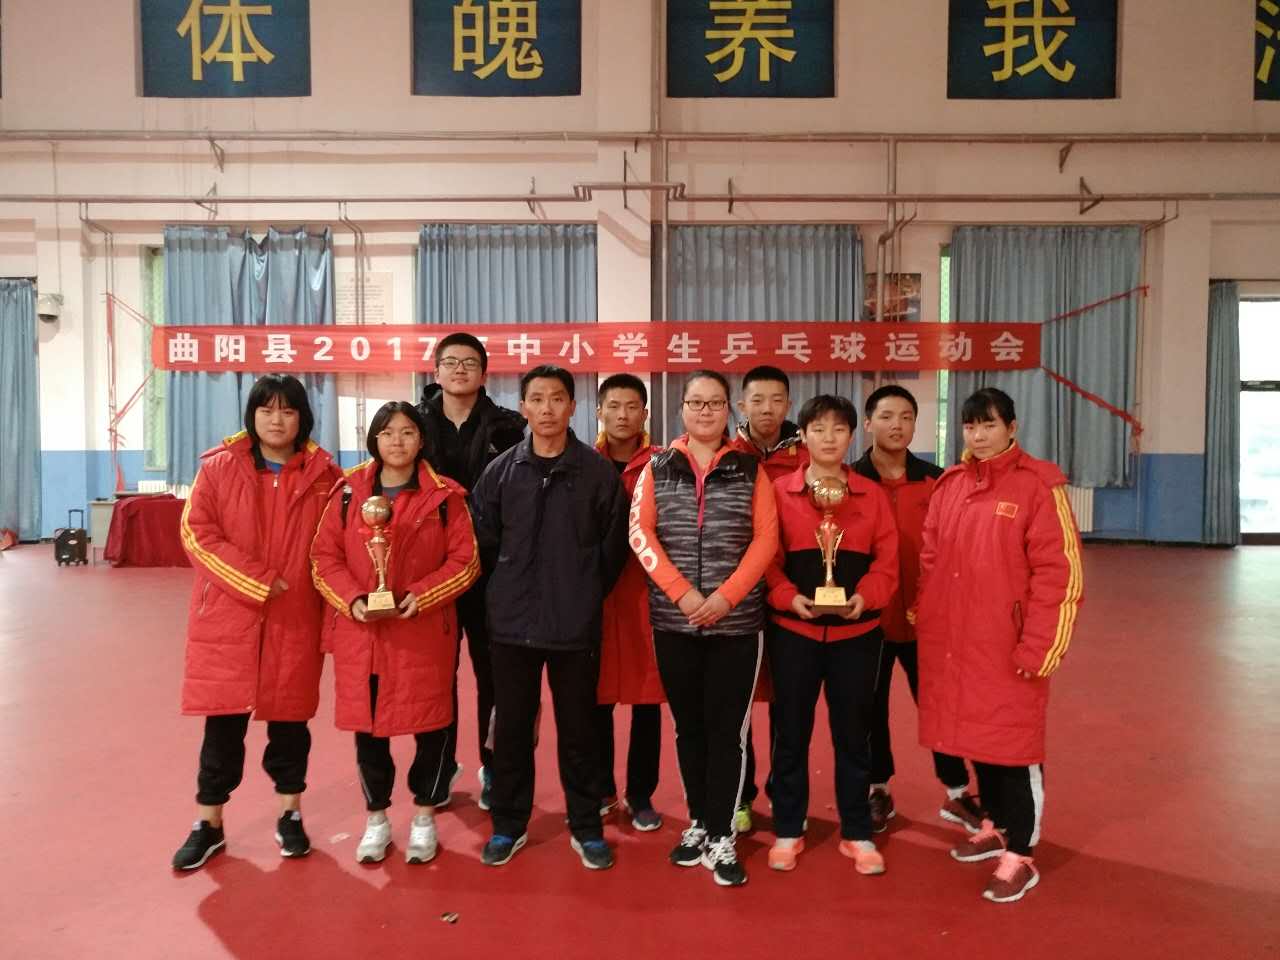 热烈祝贺我校乒乓球队取得中学生男女团体第一名第二名的好成绩 曲阳县第一高级中学 曲阳一中 河北省示范性高中